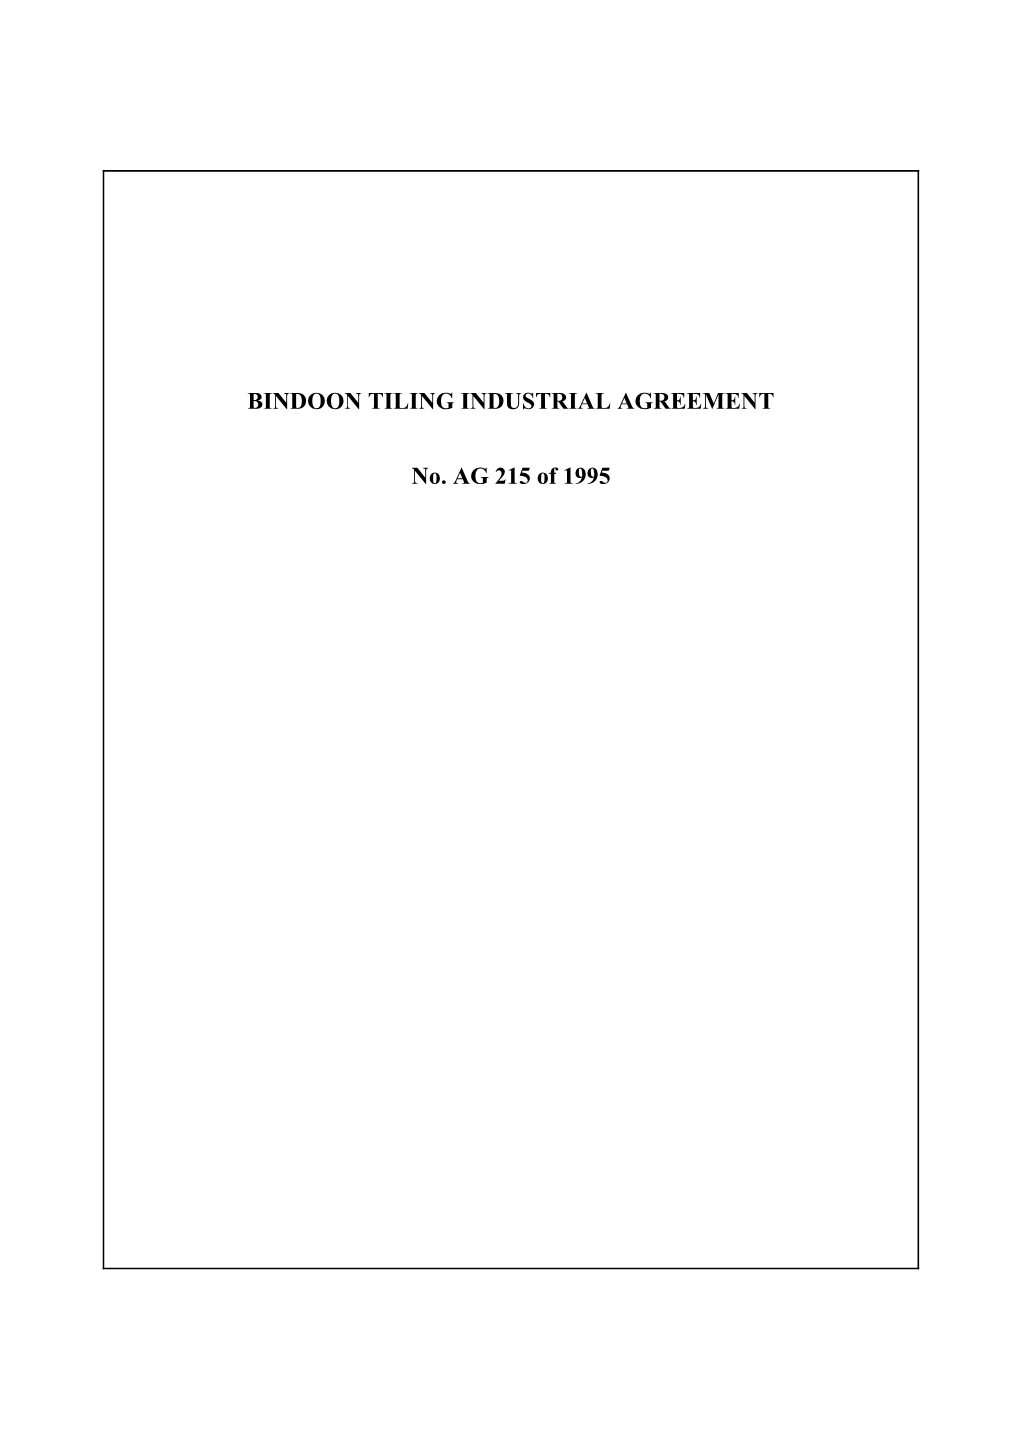 Bindoon Tiling Industrial Agreement